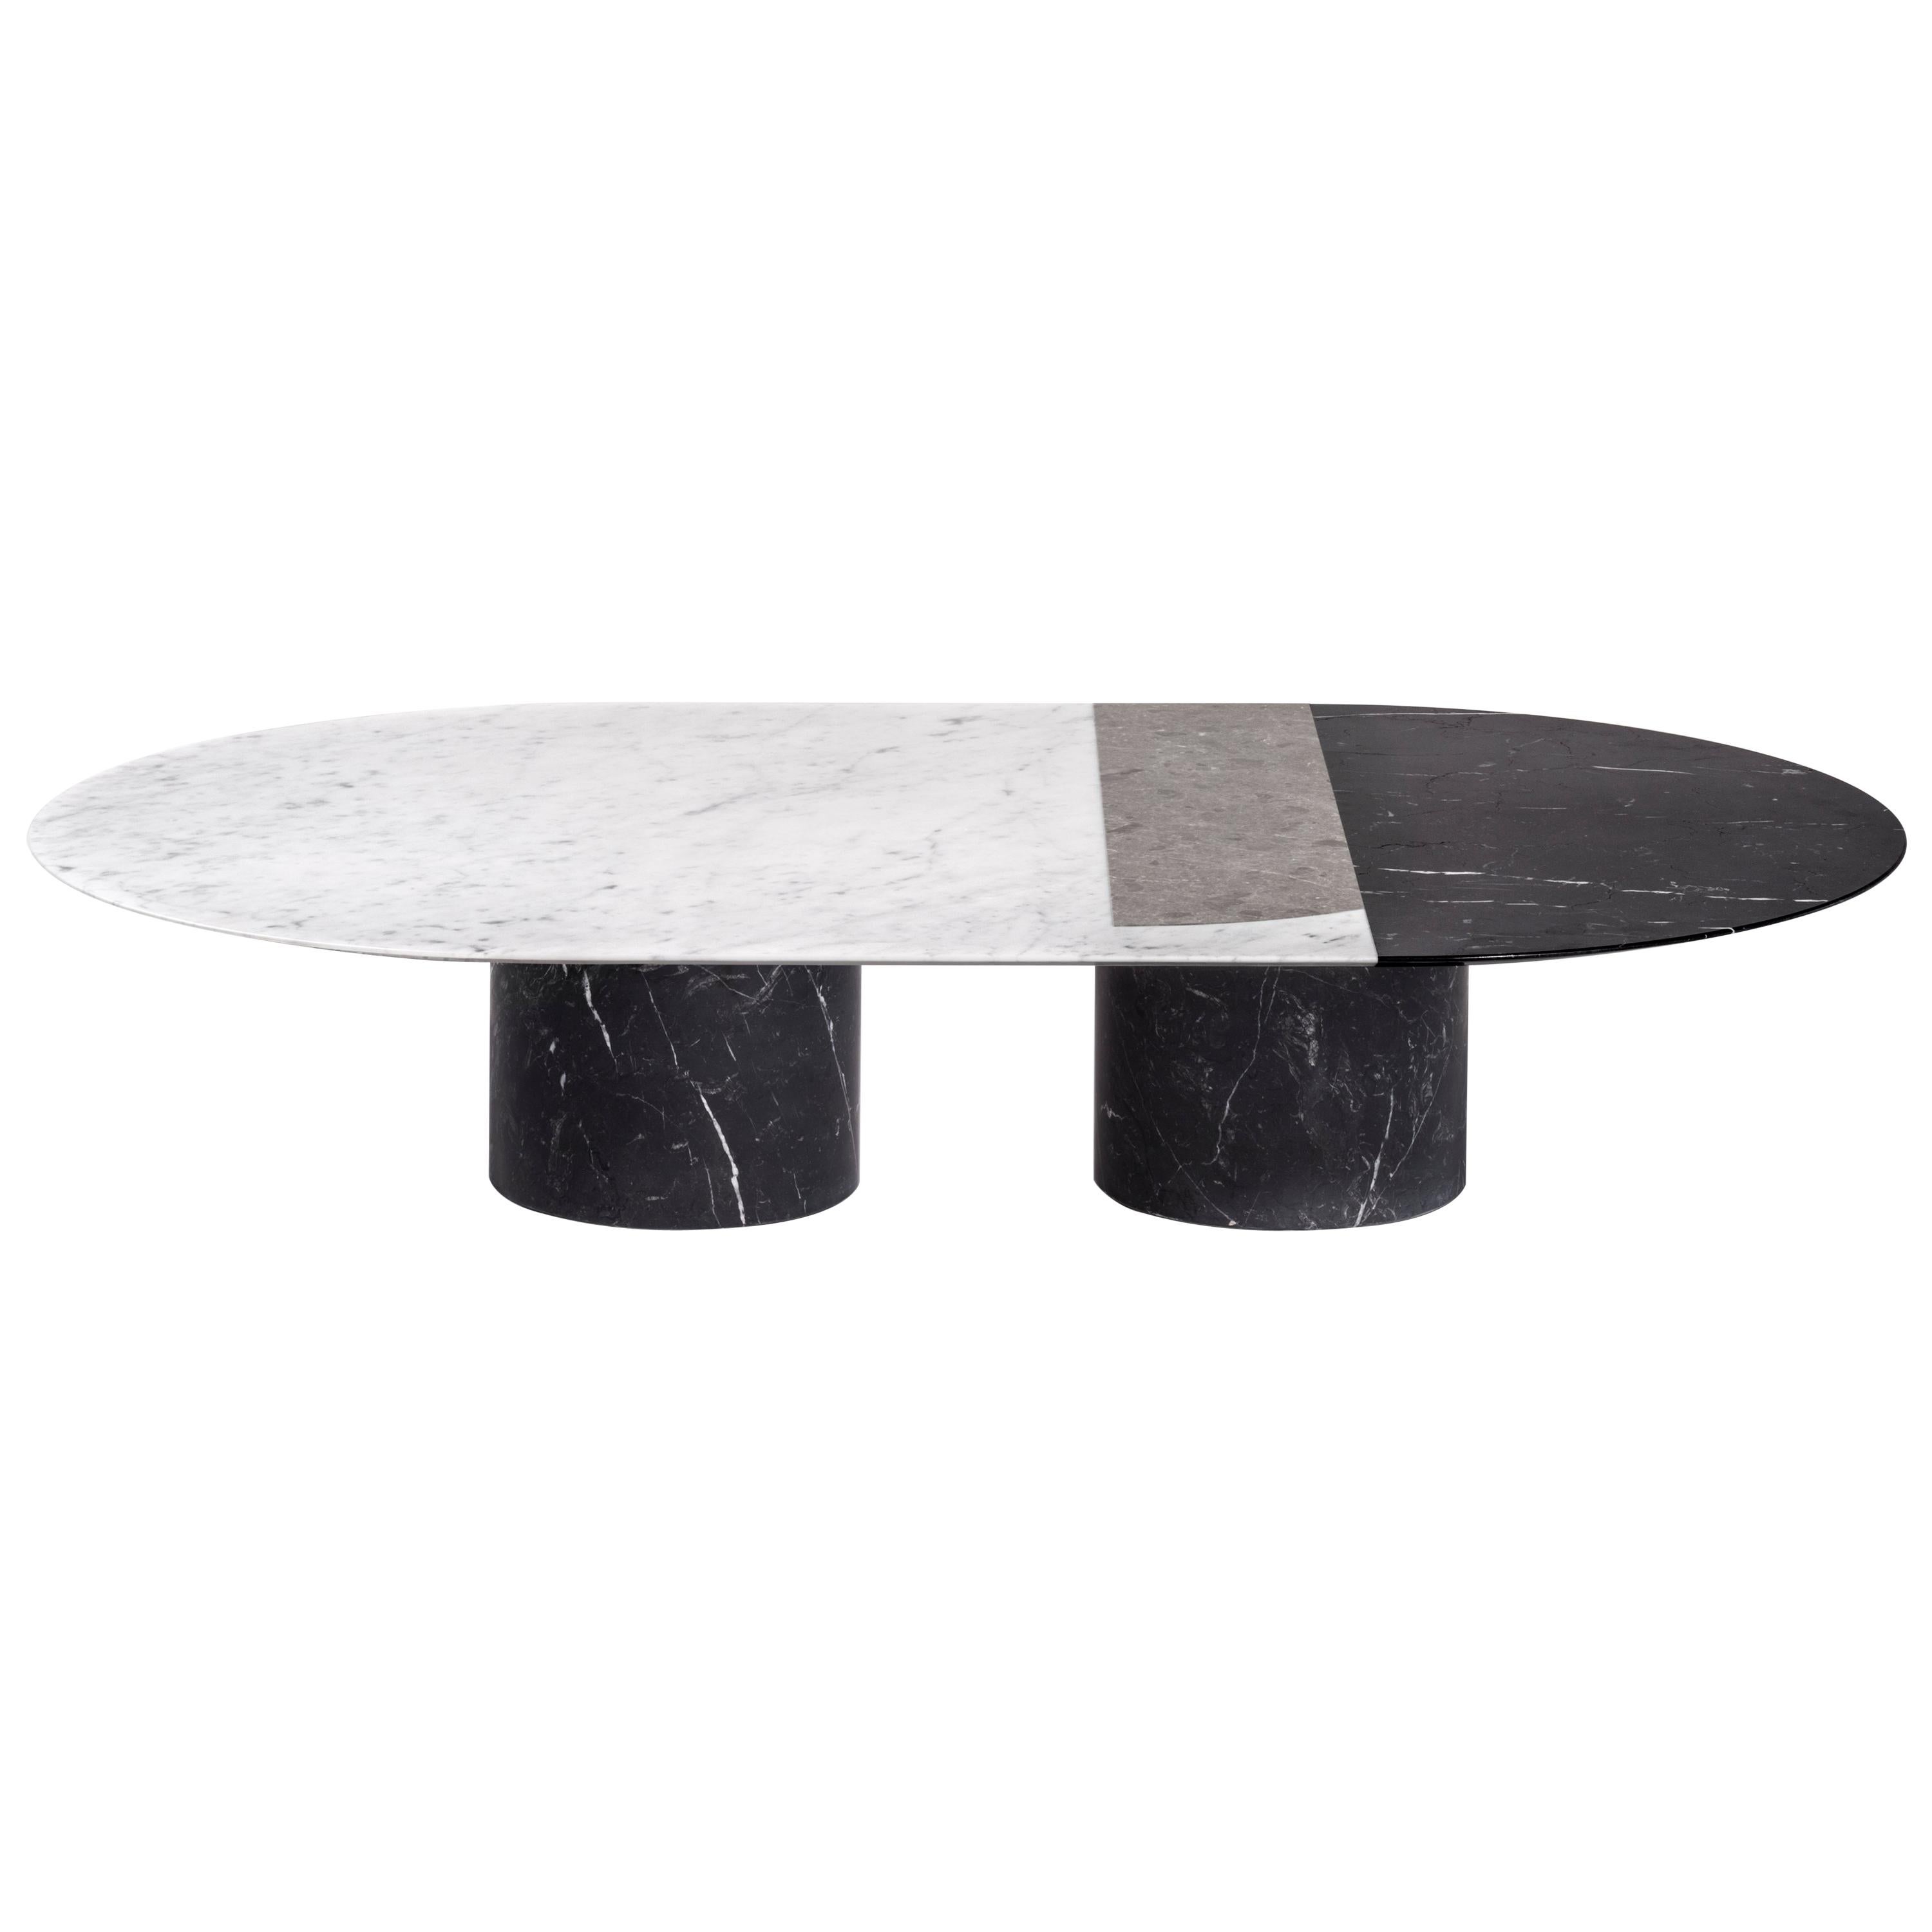 Salvatori Proiezioni Coffee Table in Black, White, & Gray Marble by Elisa Ossino For Sale